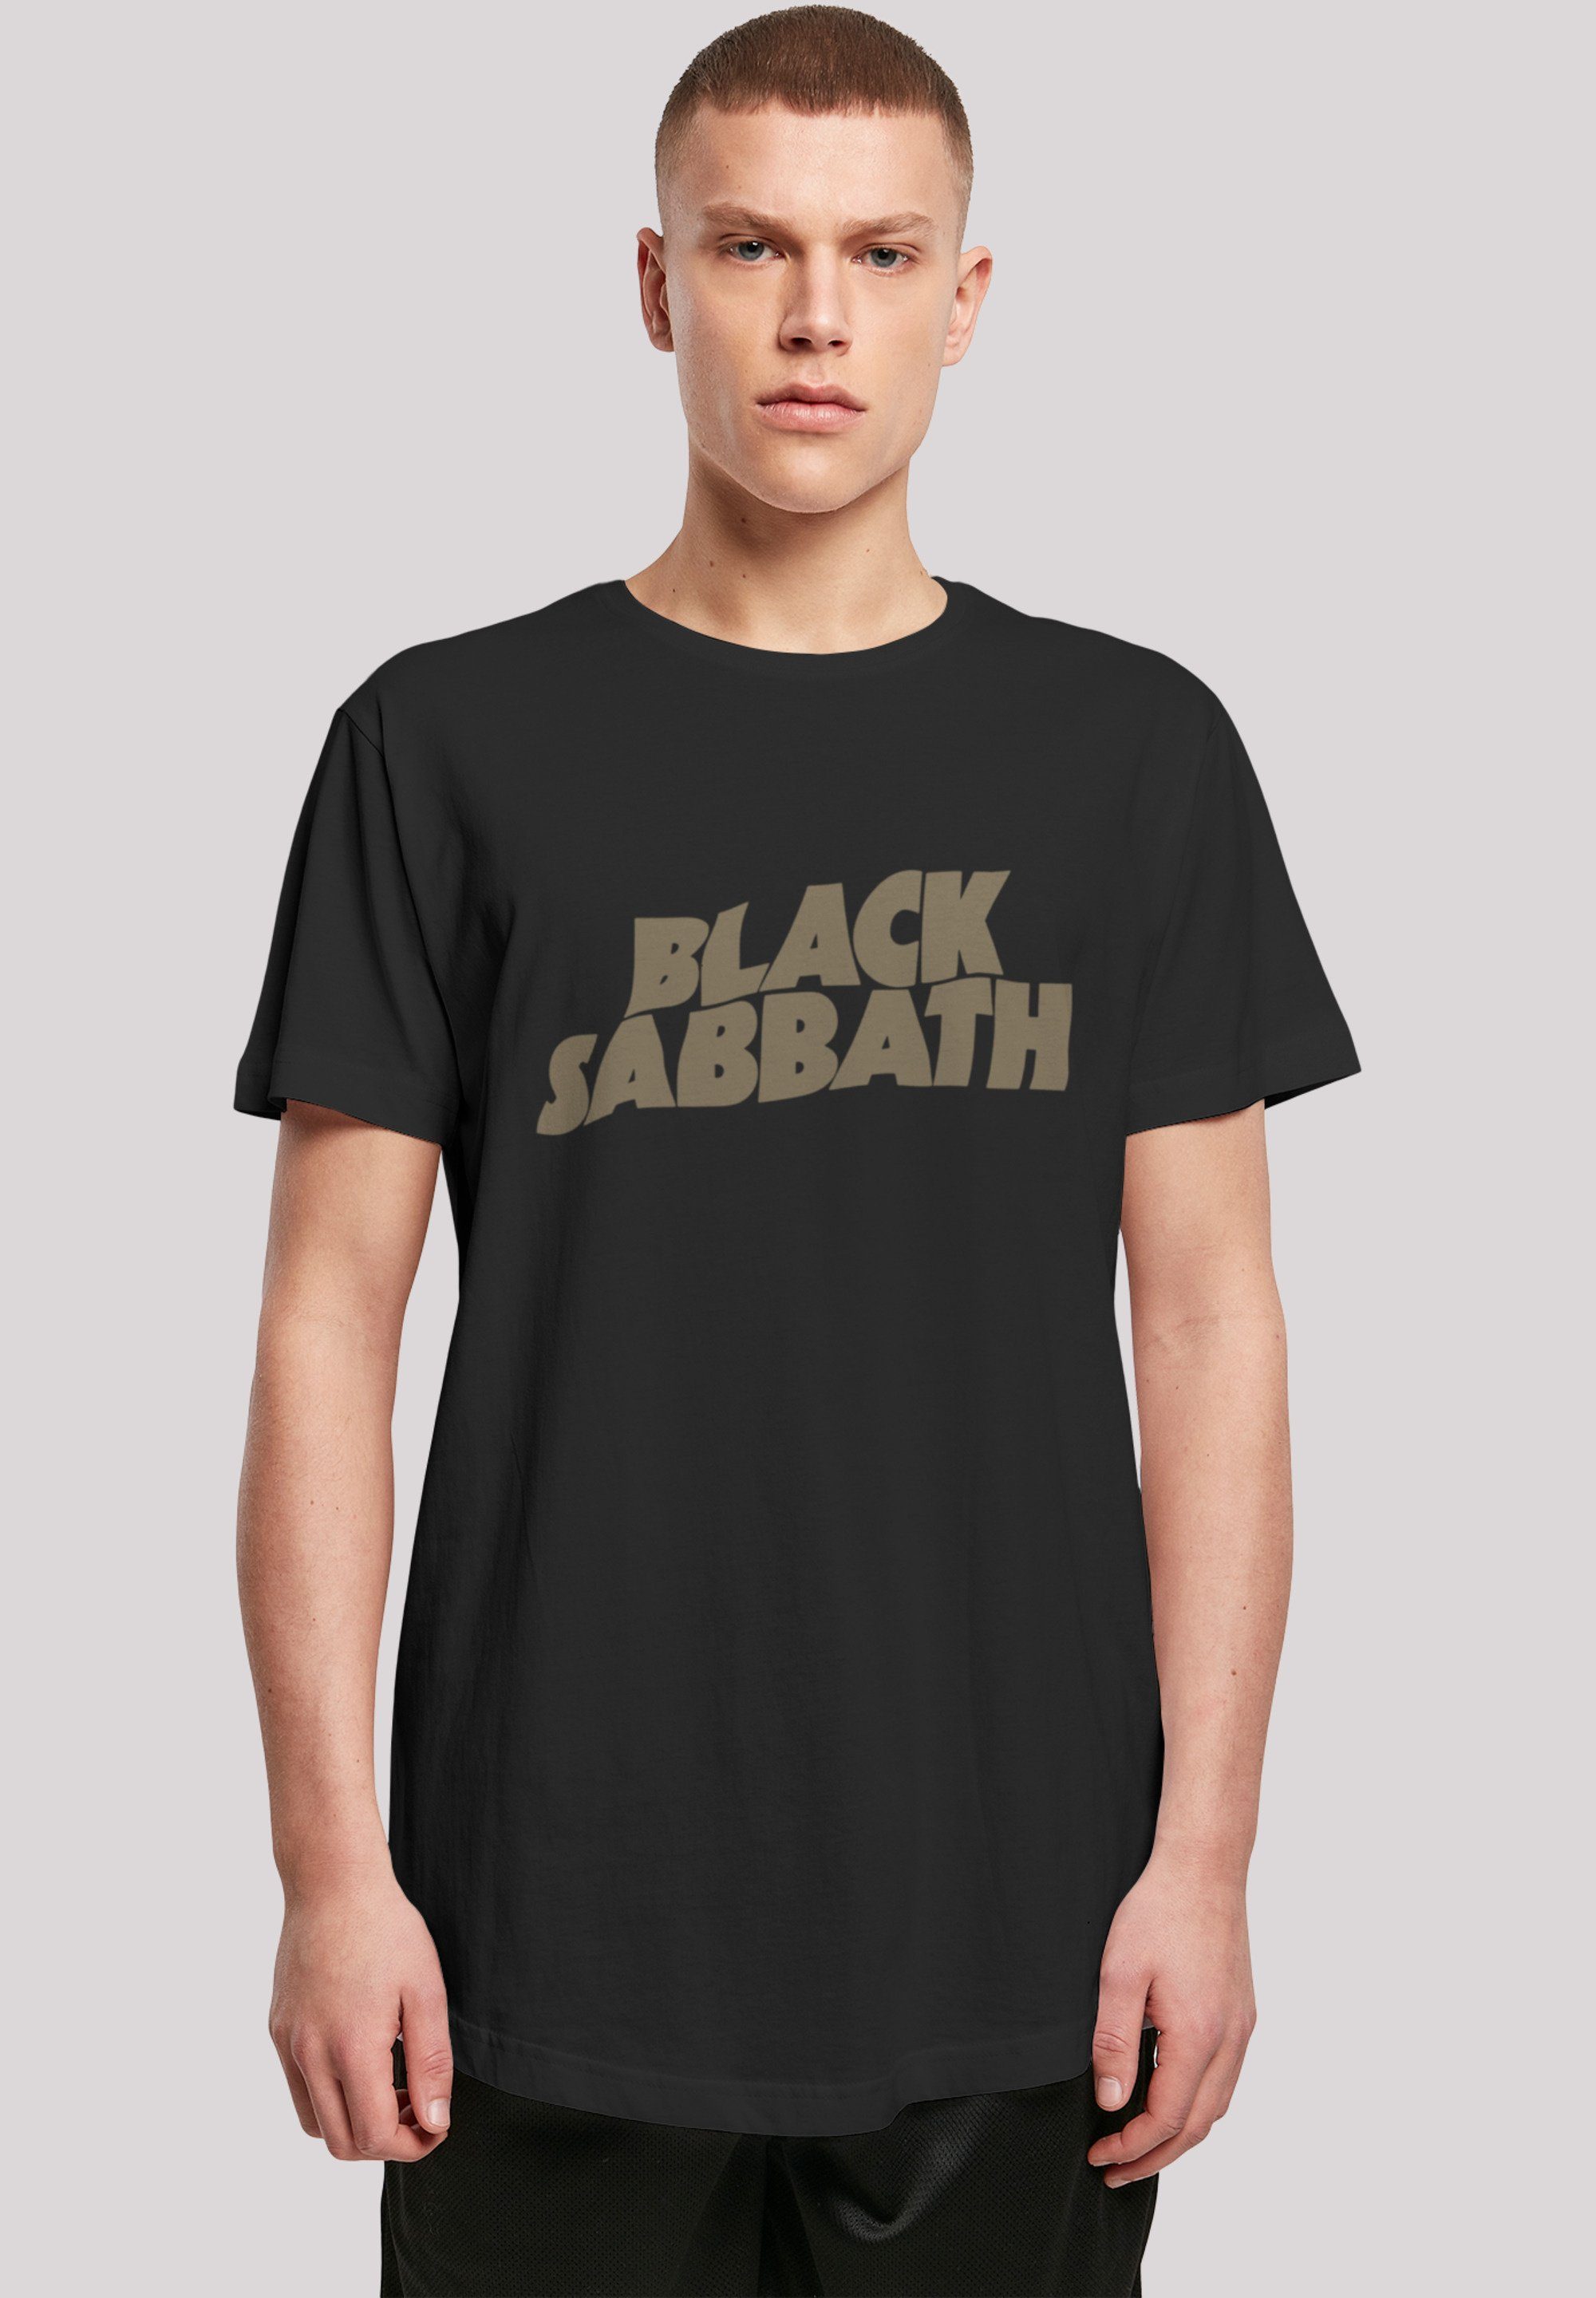 Zip 1978 US Sabbath Metal Print, Tour weicher Black Black T-Shirt Tragekomfort Band mit Sehr F4NT4STIC hohem Baumwollstoff